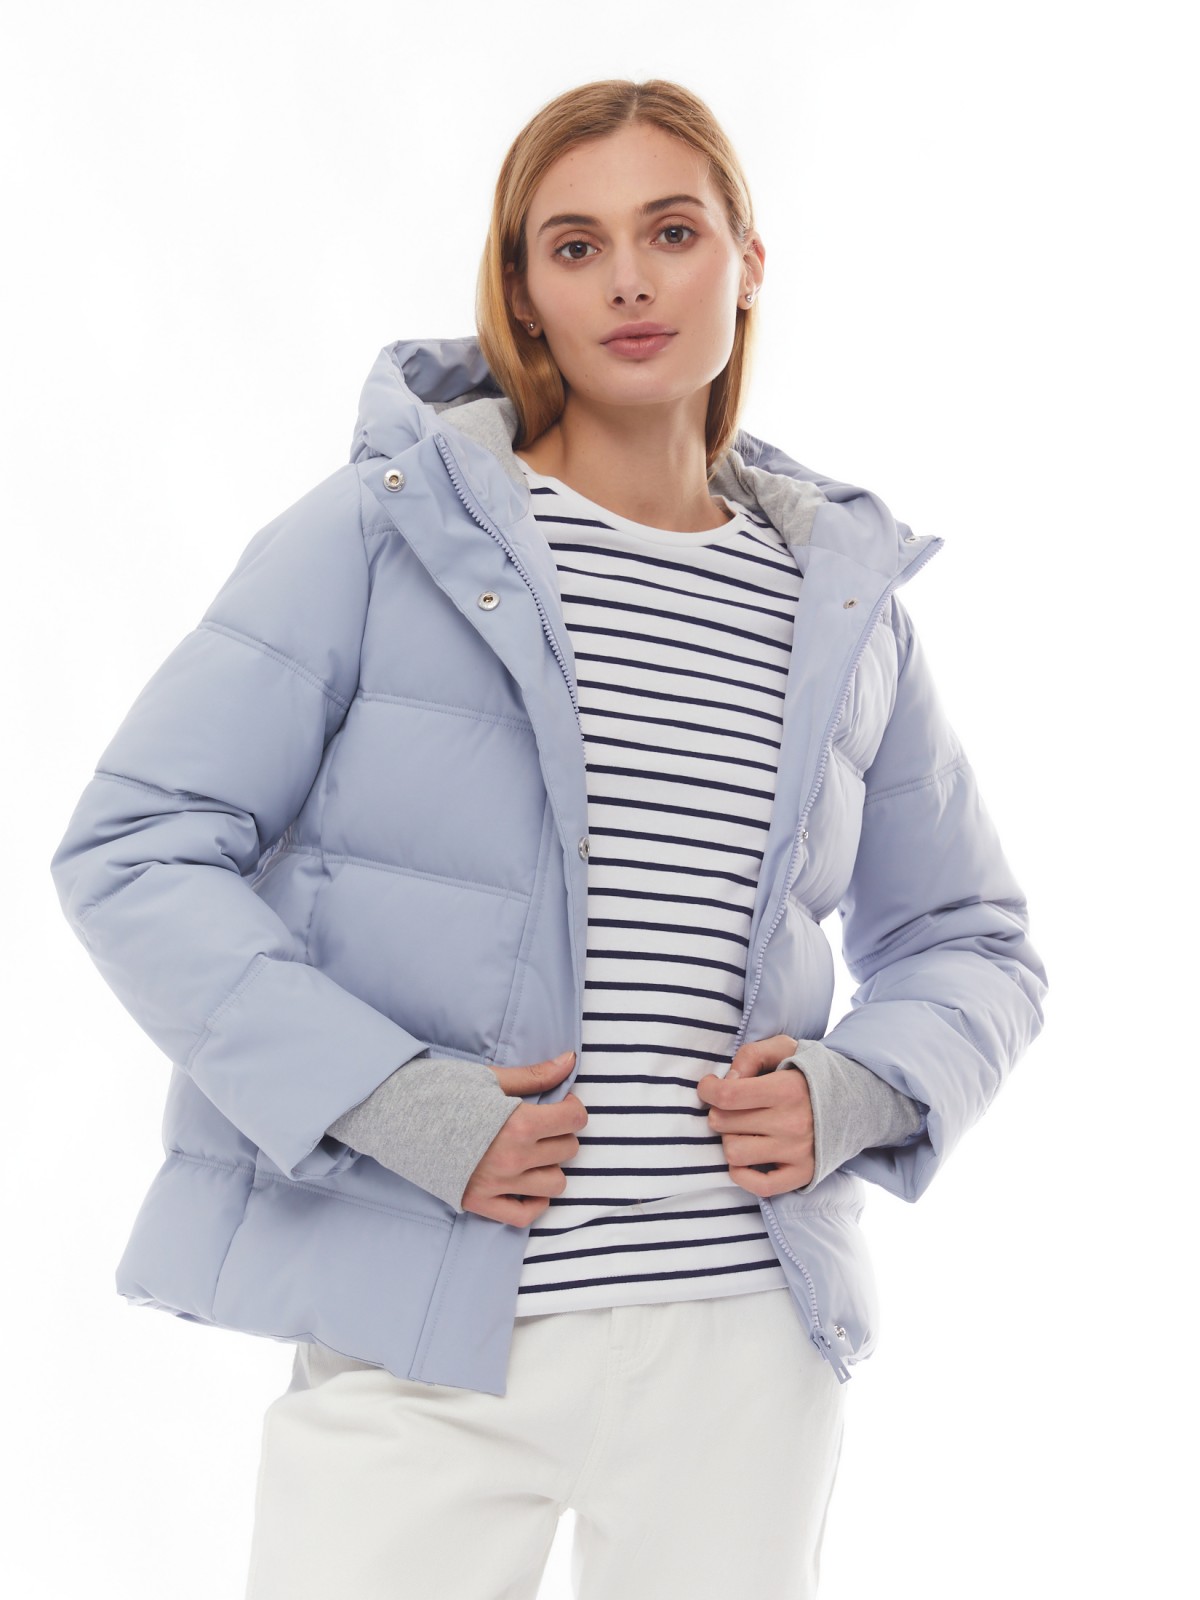 Утеплённая стёганая куртка укороченного фасона с капюшоном zolla 024125102064, цвет светло-голубой, размер XS - фото 1